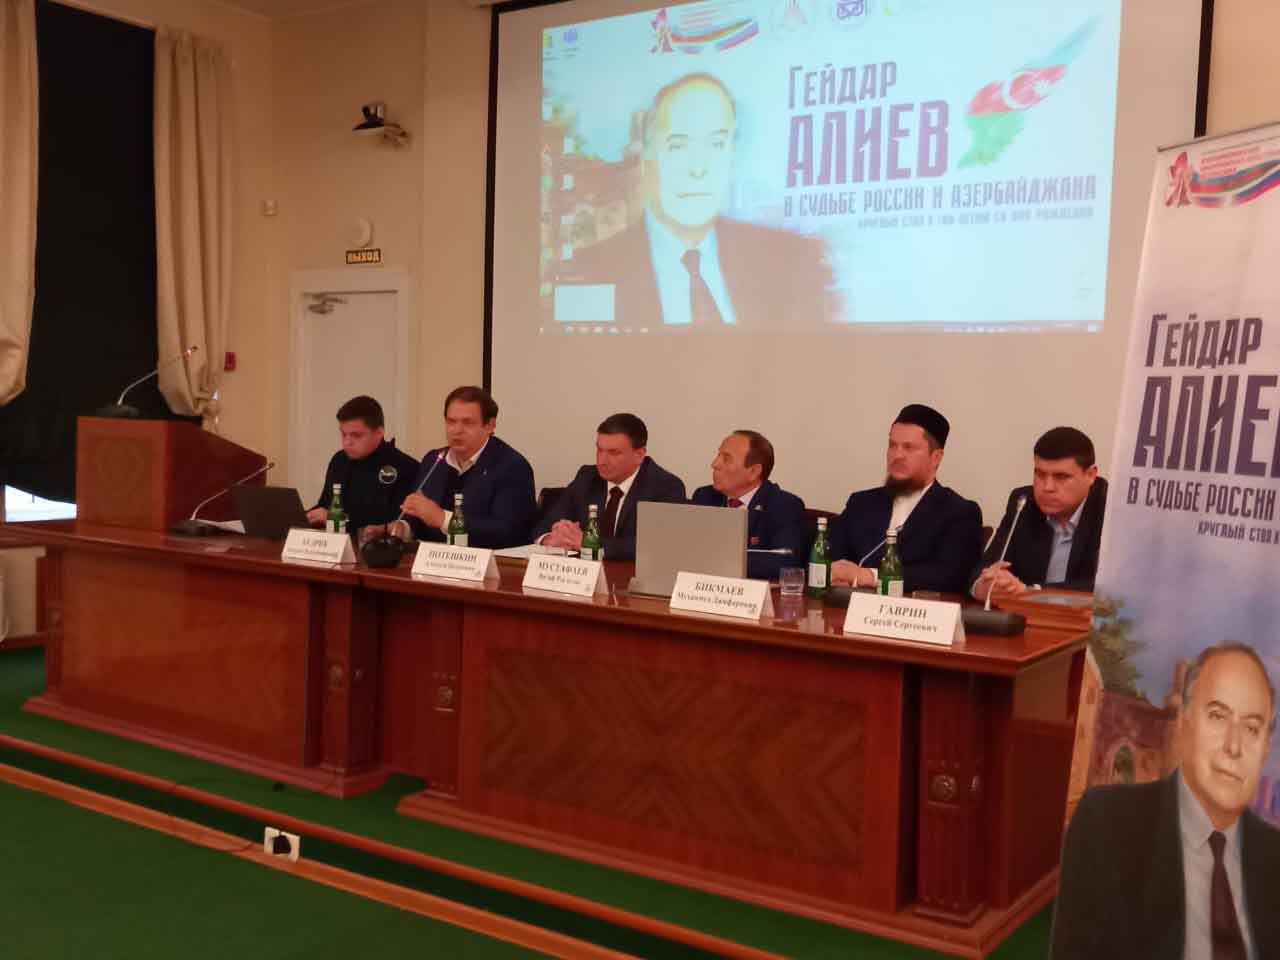  В Ростове прошел круглый стол, посвященный Гейдару Алиеву